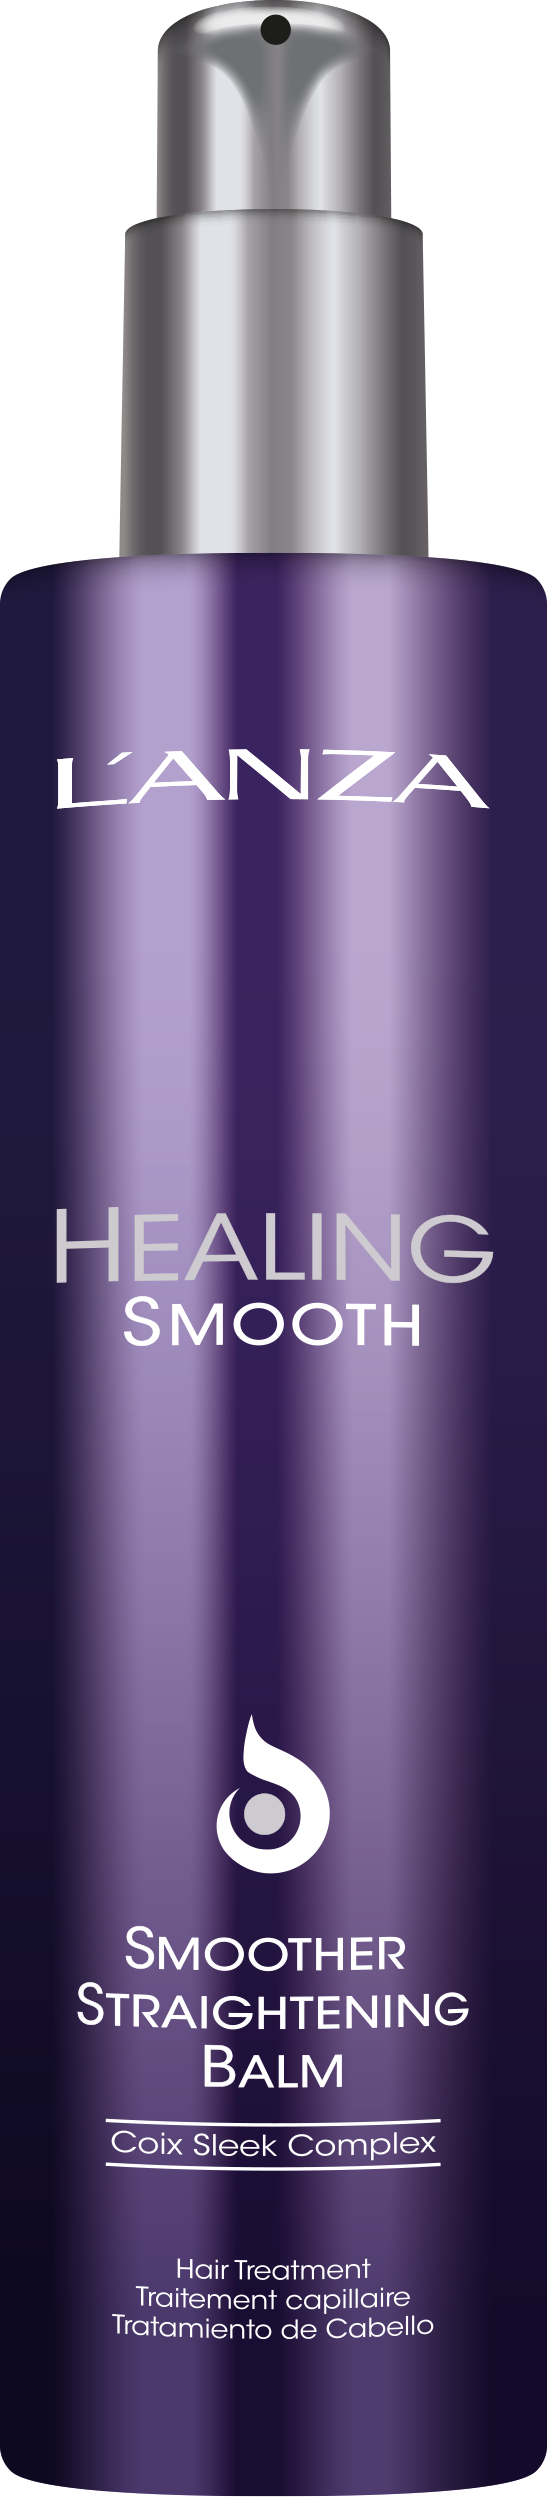 L'ANZA Healing Smooth Straightening Balm